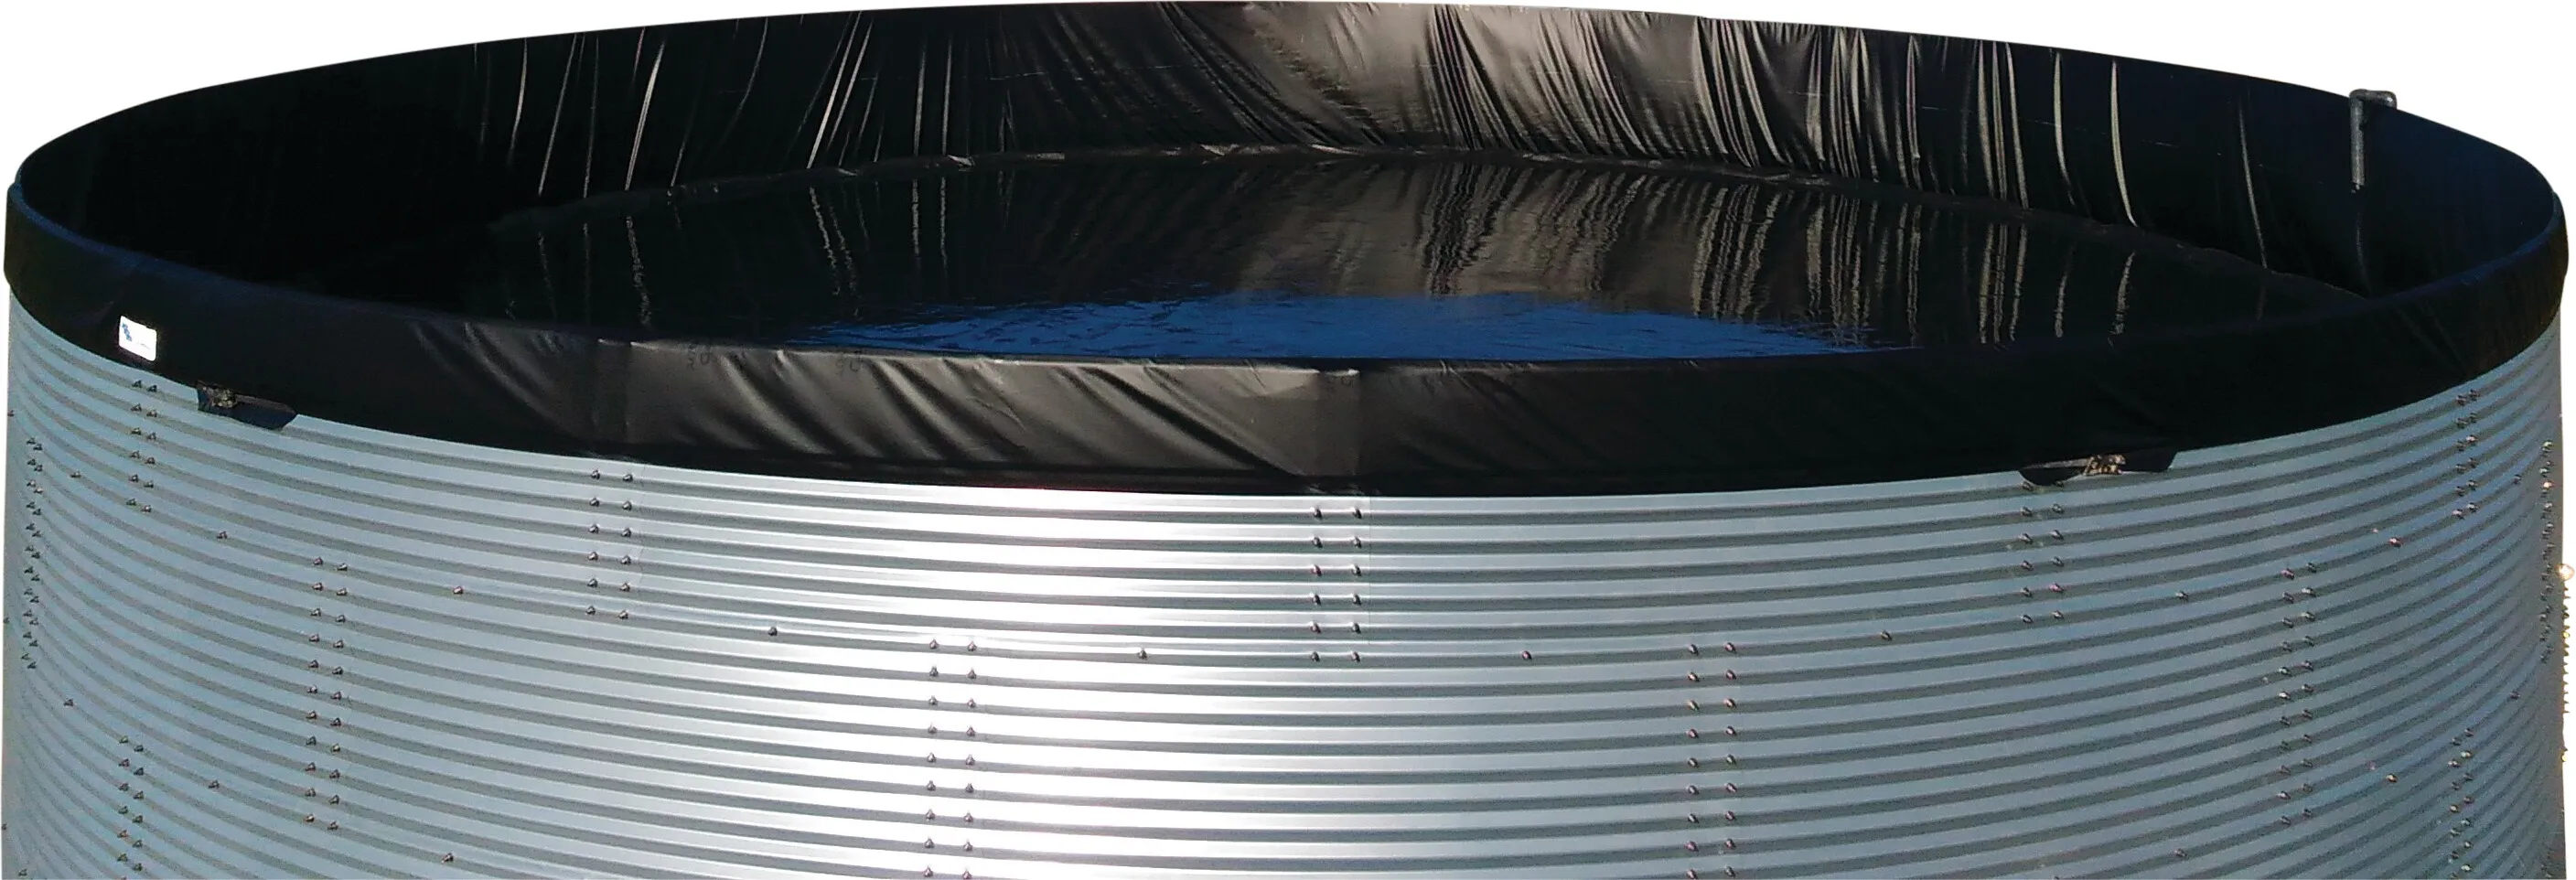 Réservoir d'eau acier galvanisé 5000ltr type WSW 2.01 x 1.59m